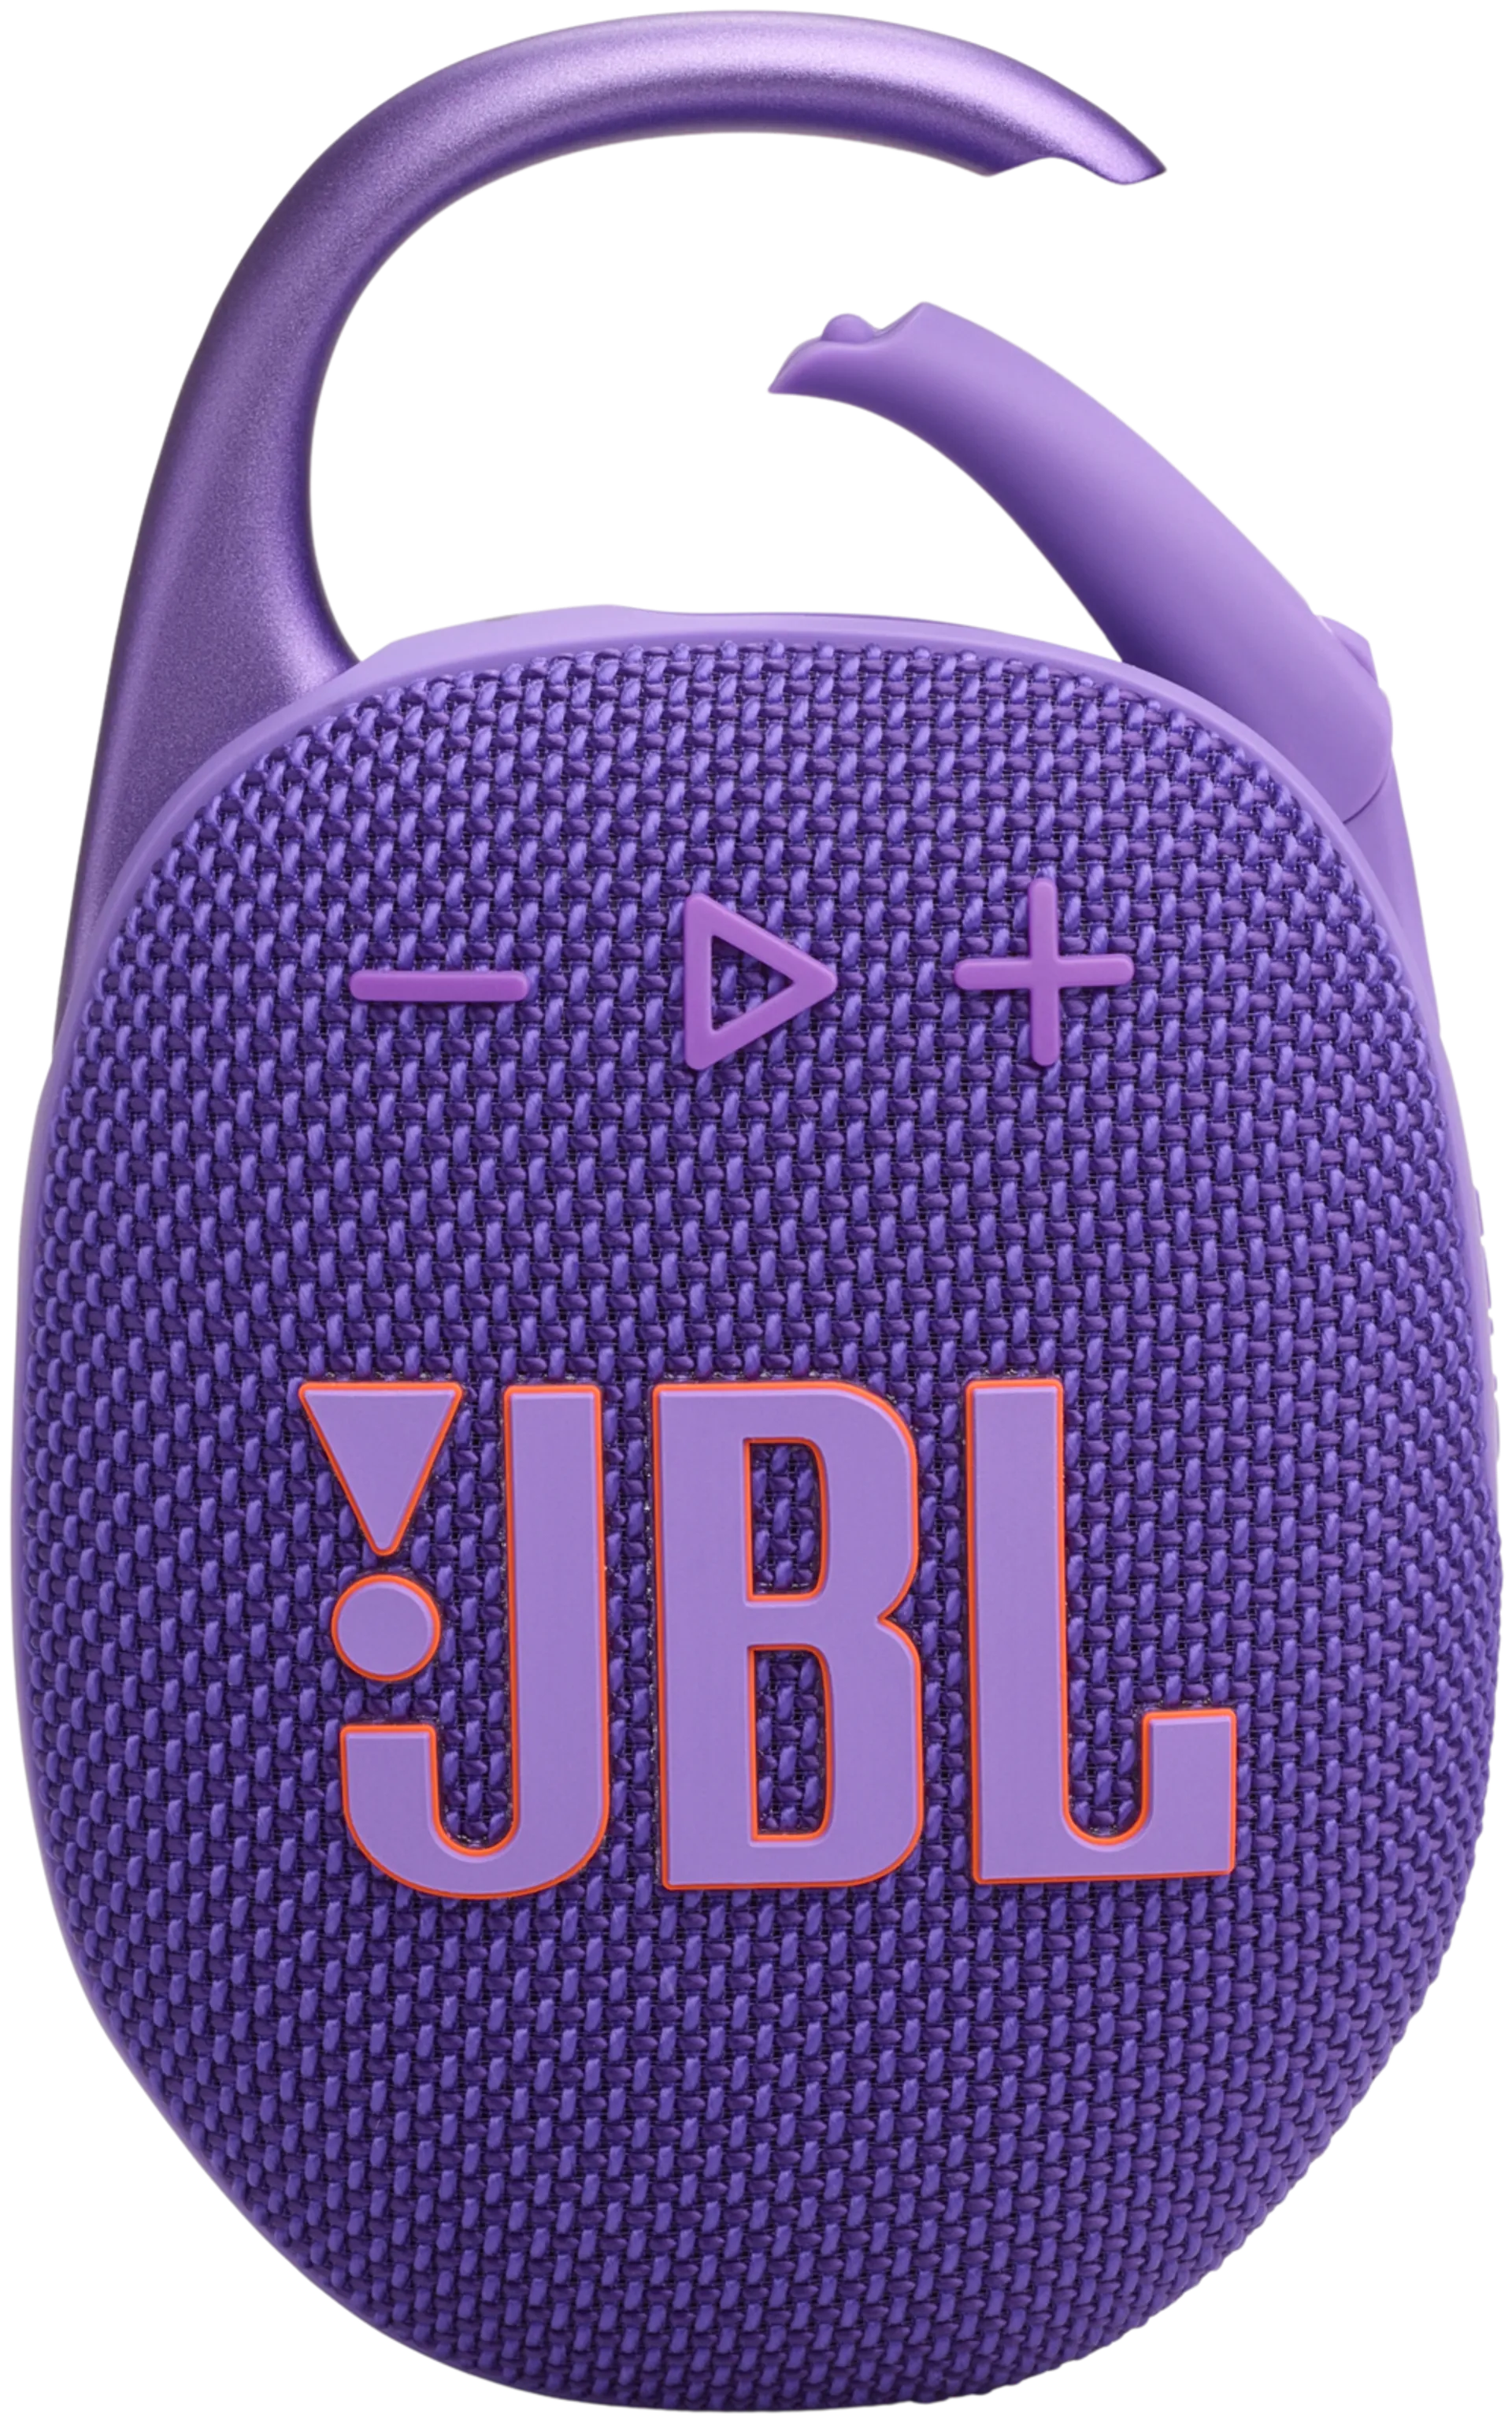 JBL Bluetooth kaiutin Clip 5 violetti - 2